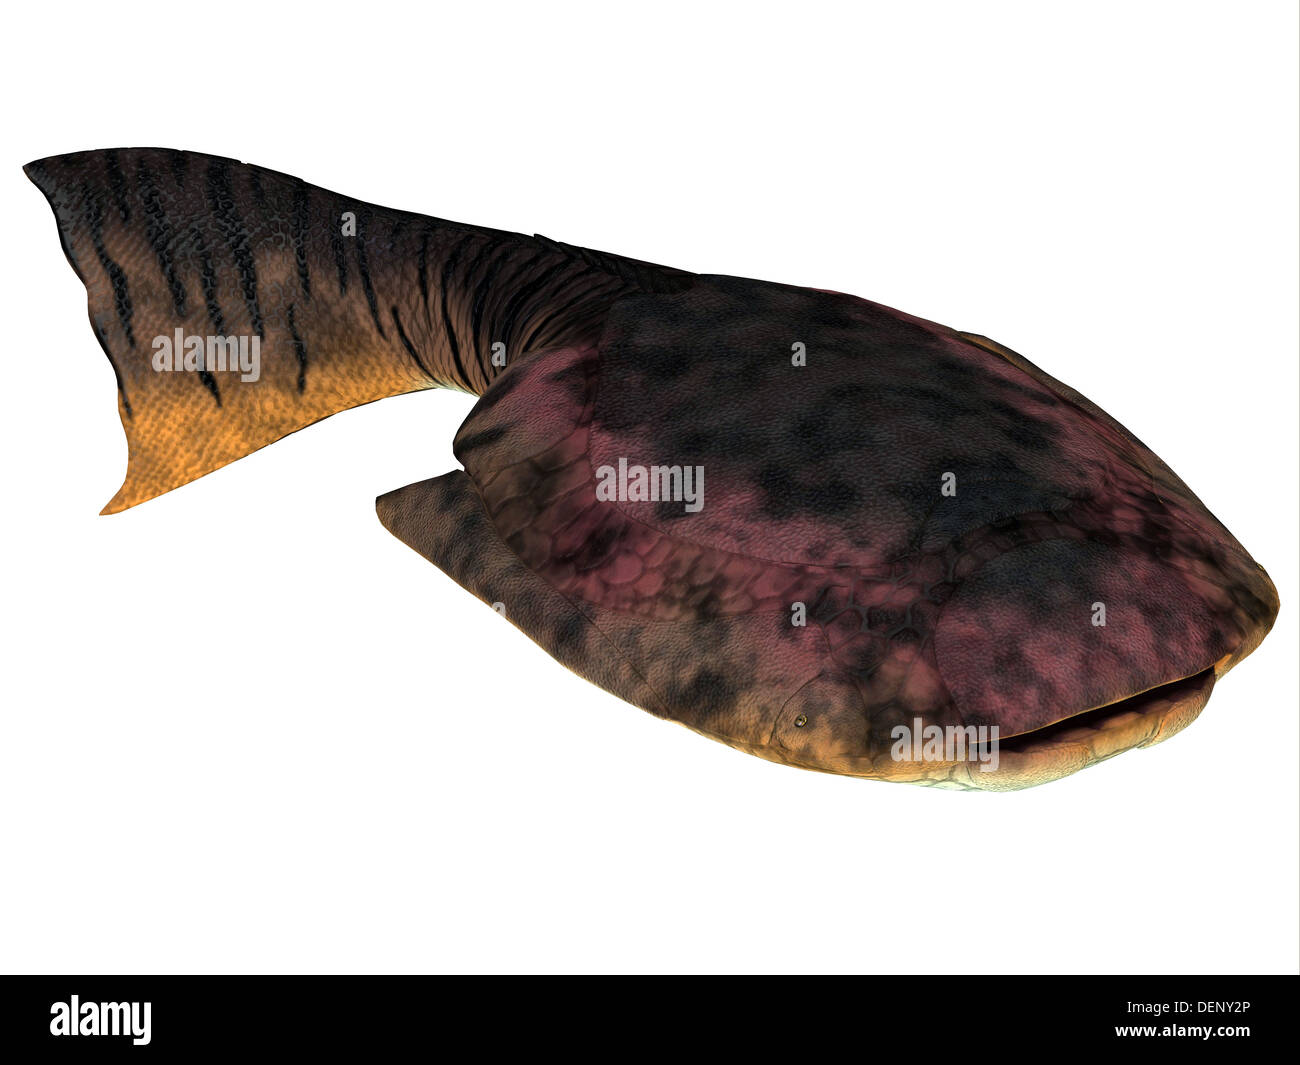 Drepanaspis es una especie extinta de peces jawless primitivos del Período Devoniano. Foto de stock